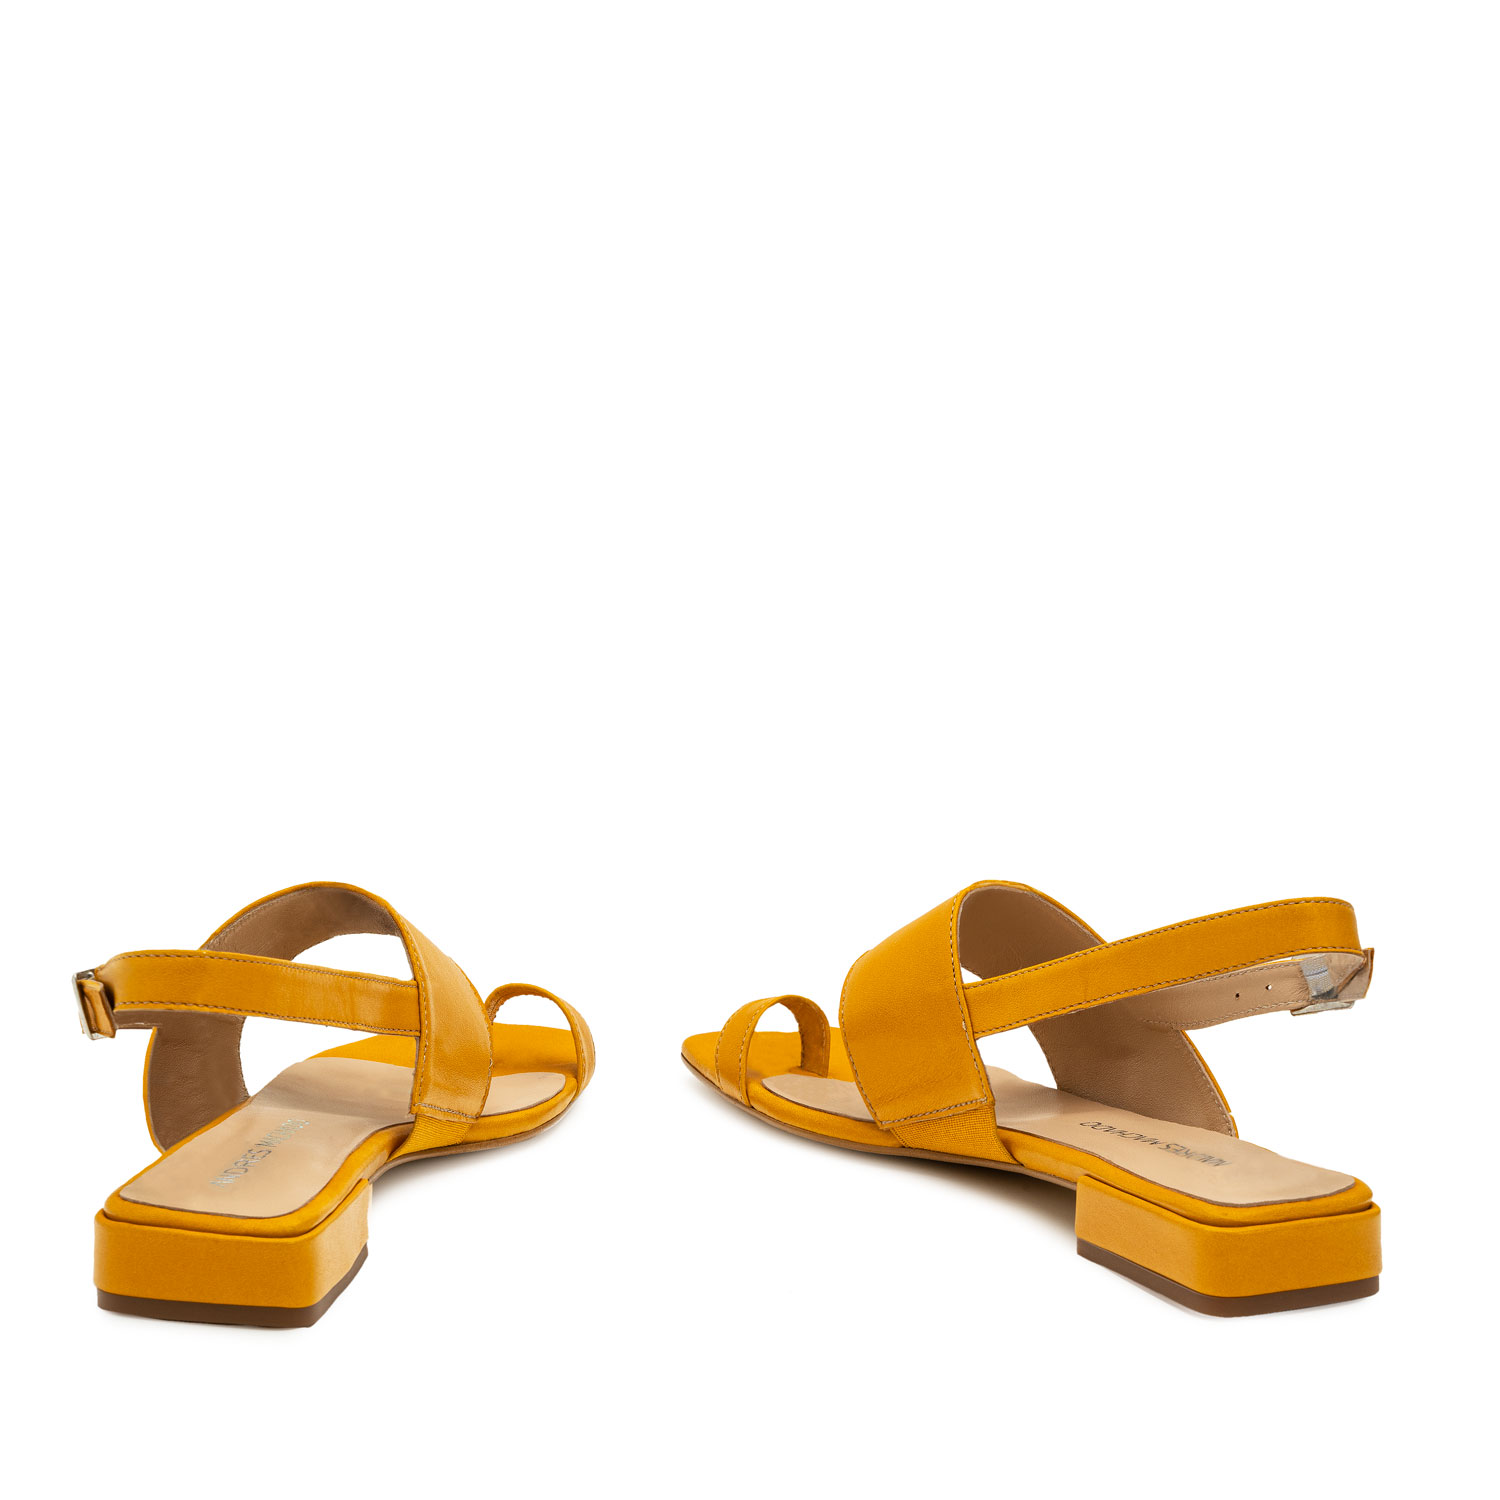 Sandalen aus gelbem Leder - MADE IN SPAIN - 